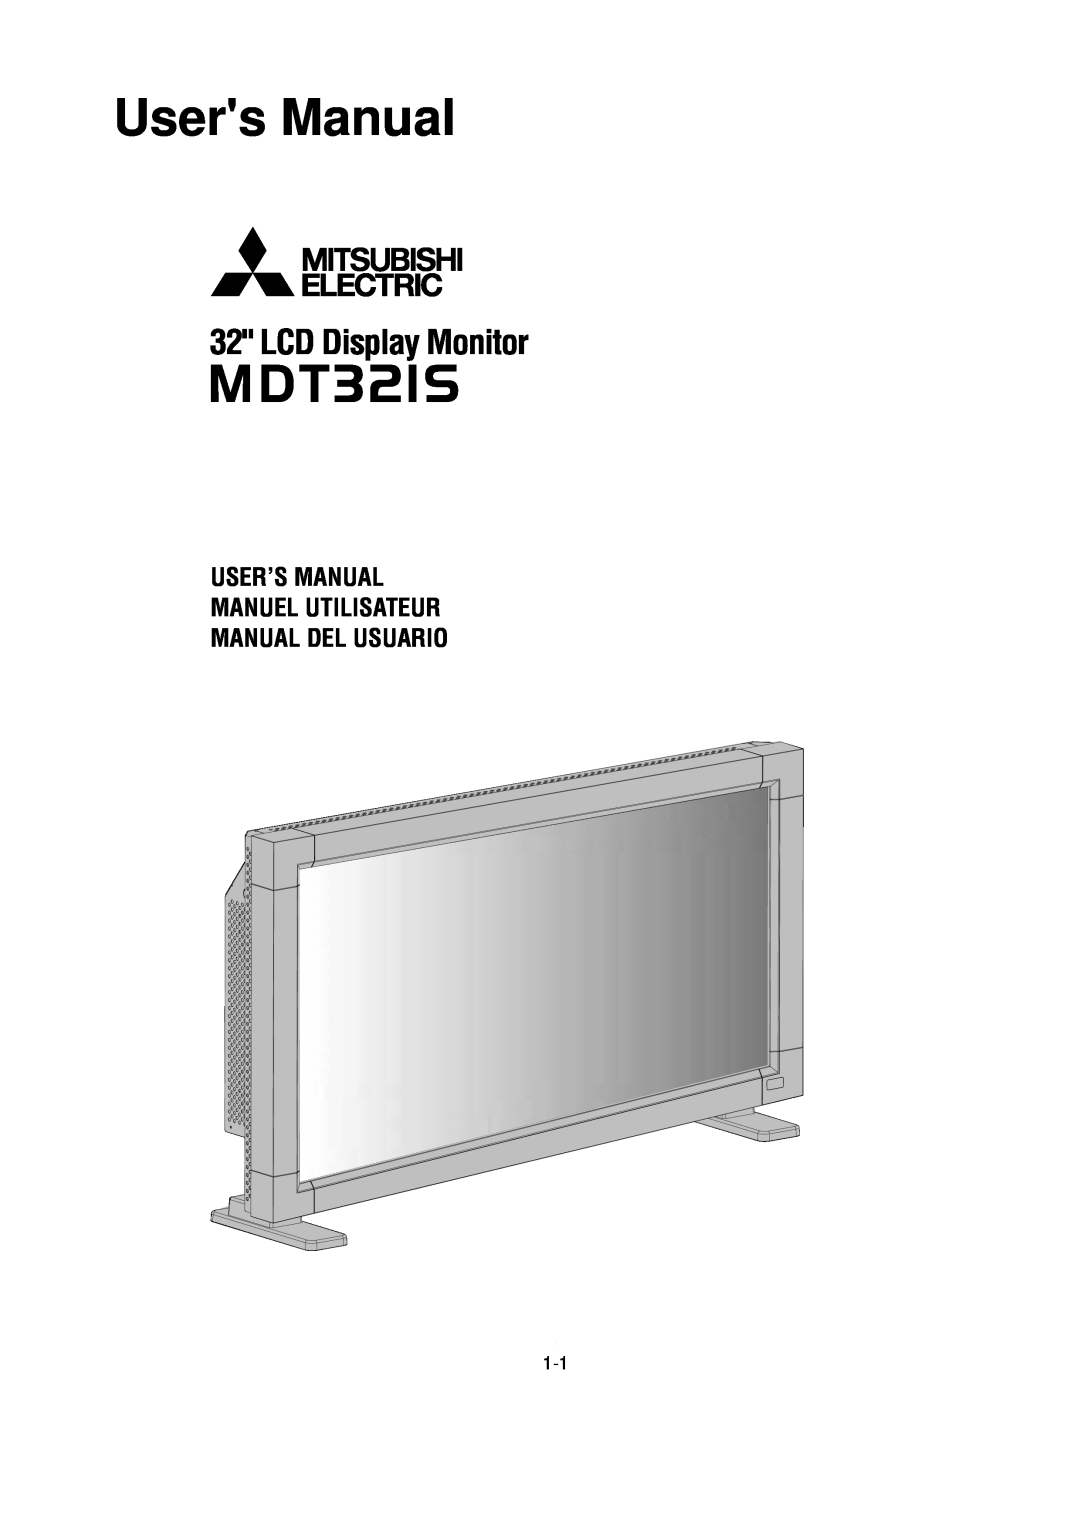 Mitsubishi Electronics MDT321S user manual User’S Manual Manuel Utilisateur Manual Del Usuario, Users Manual 